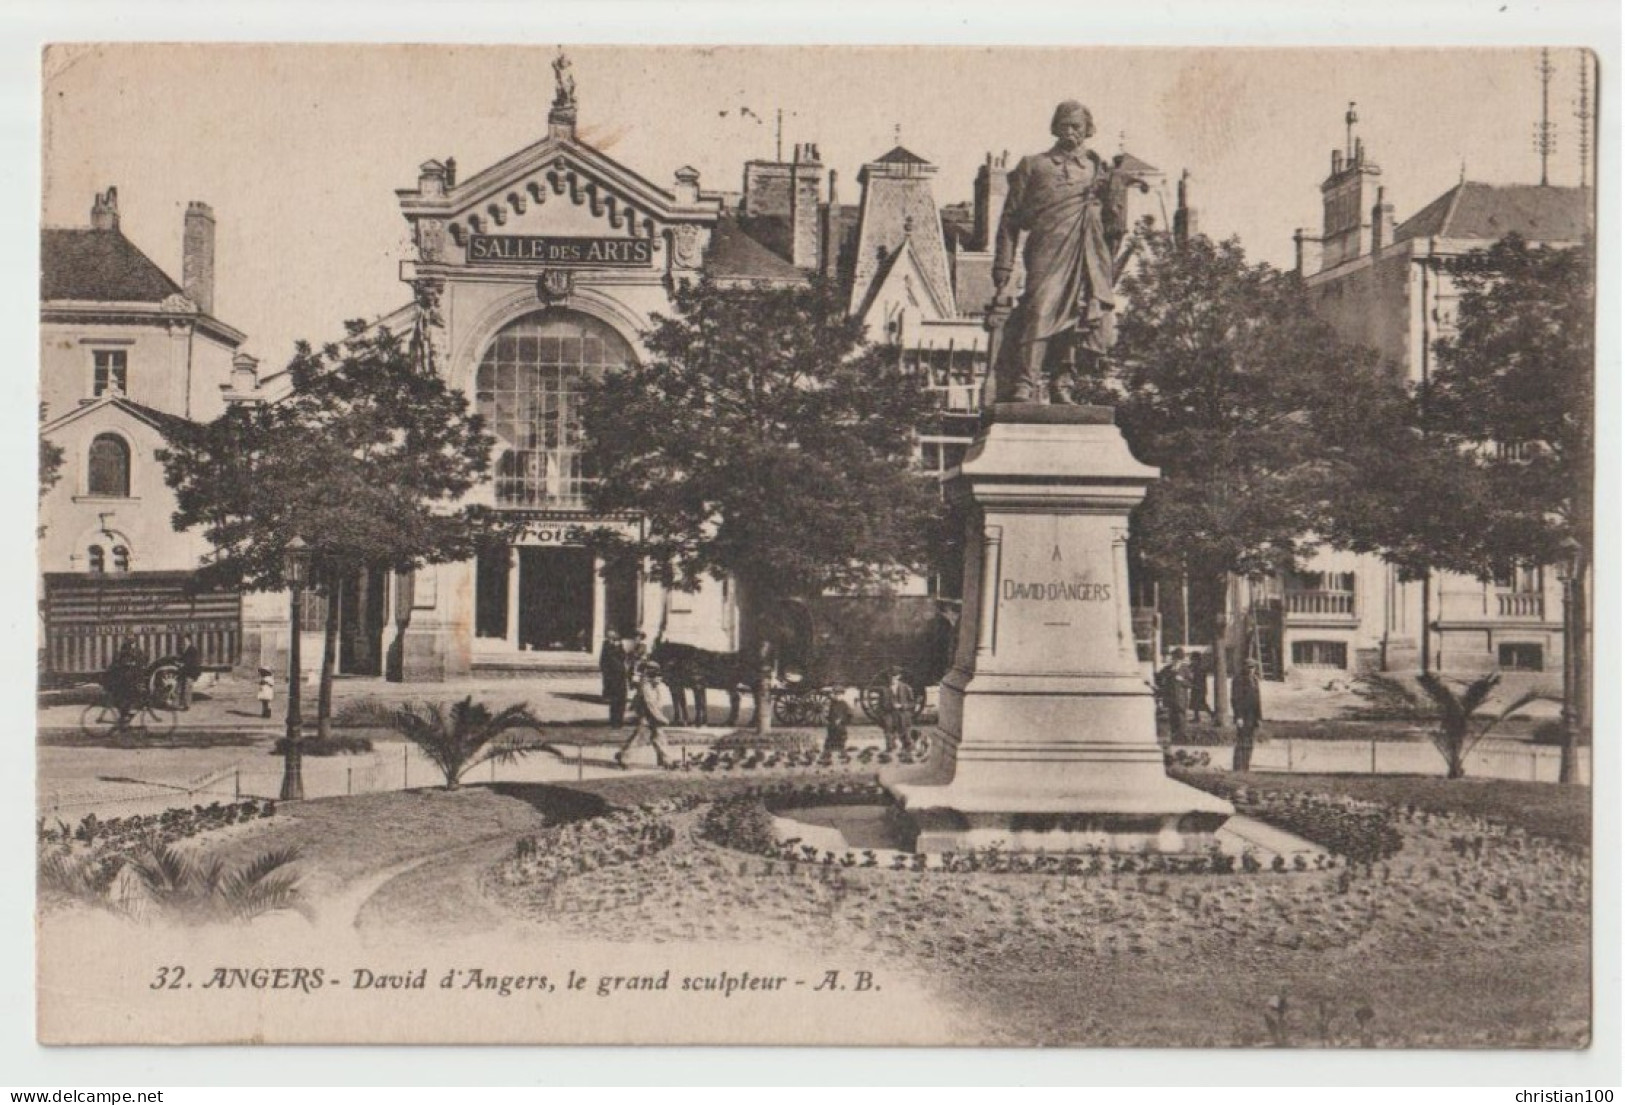 ANGERS (49) PLACE LORRAINE - SALLE DES ARTS - STATUE DE DAVID D' ANGERS GRAND SCULPTEUR - ECRITE EN 1922  - 2 SCANS - - Angers